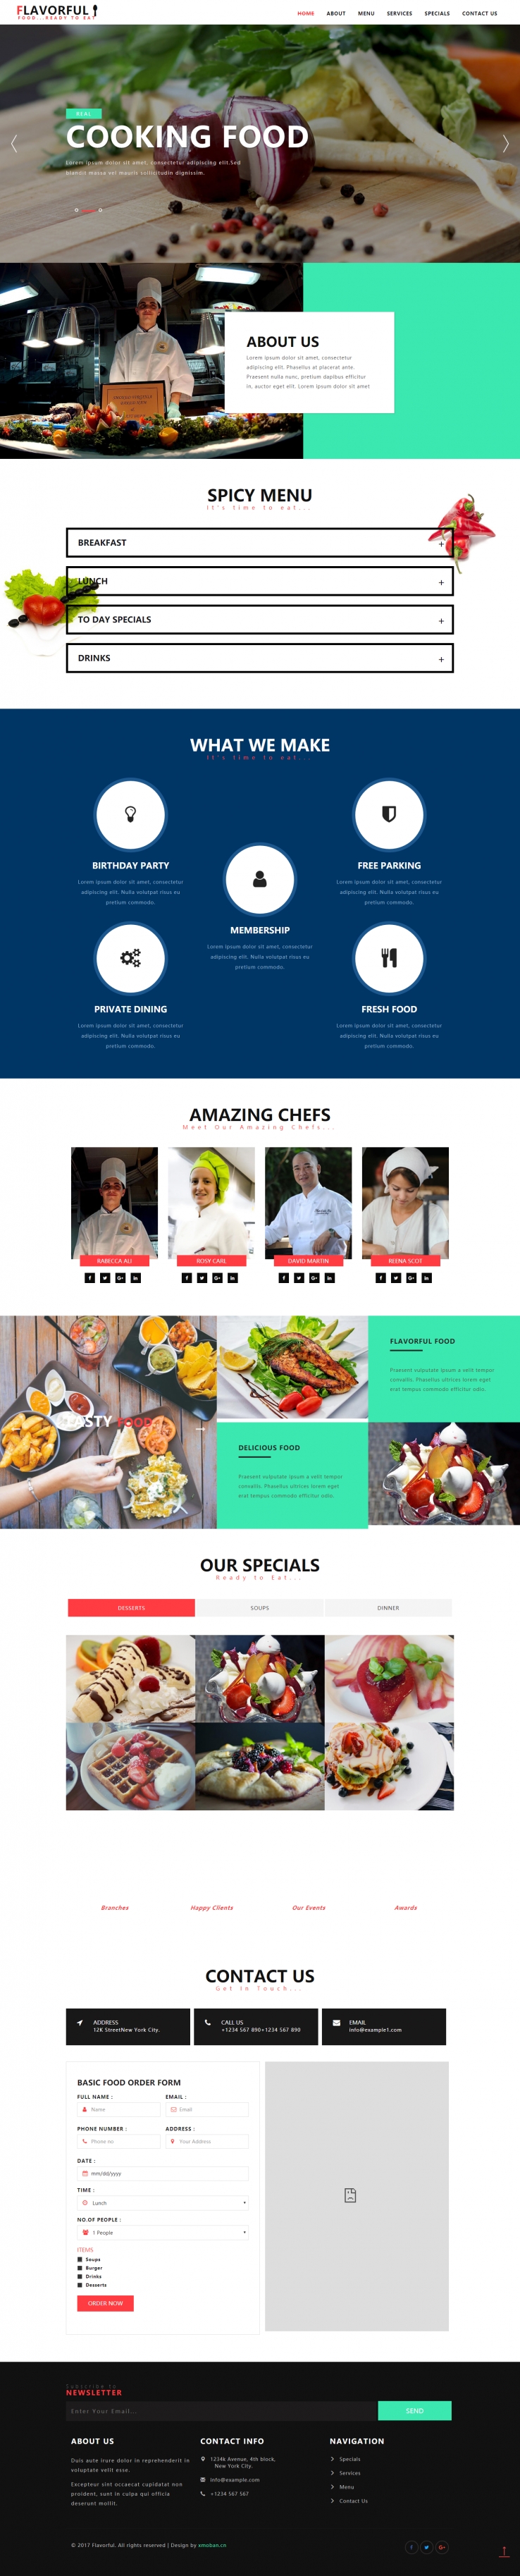 红色欧美风格的餐厅服务企业网站源码下载